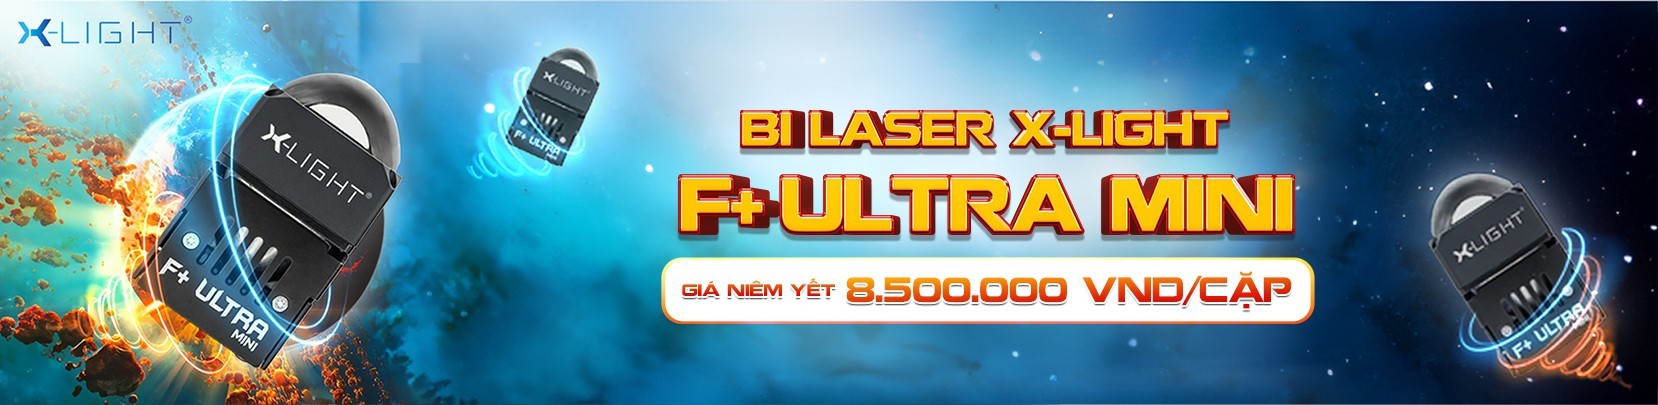 BI LASER X-LIGHT F+ ULTRA MINI